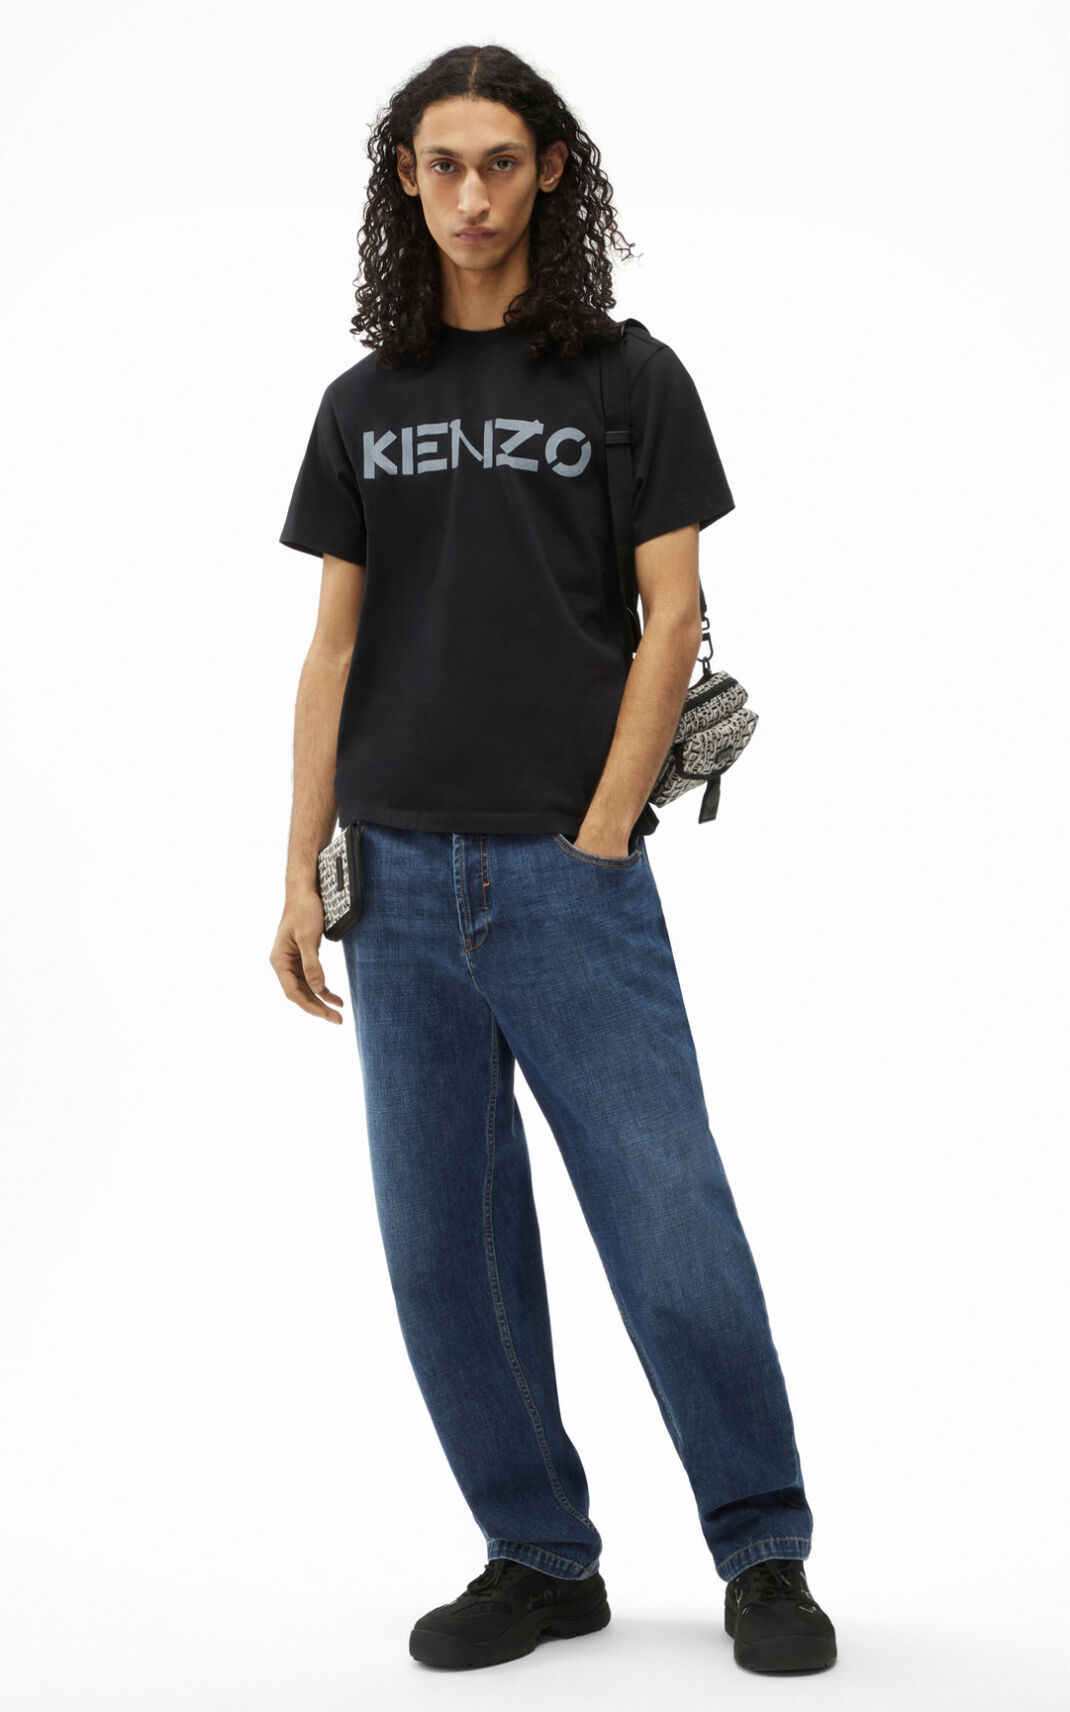 Kenzo Logo Tシャツ メンズ 黒 - VXADFG392